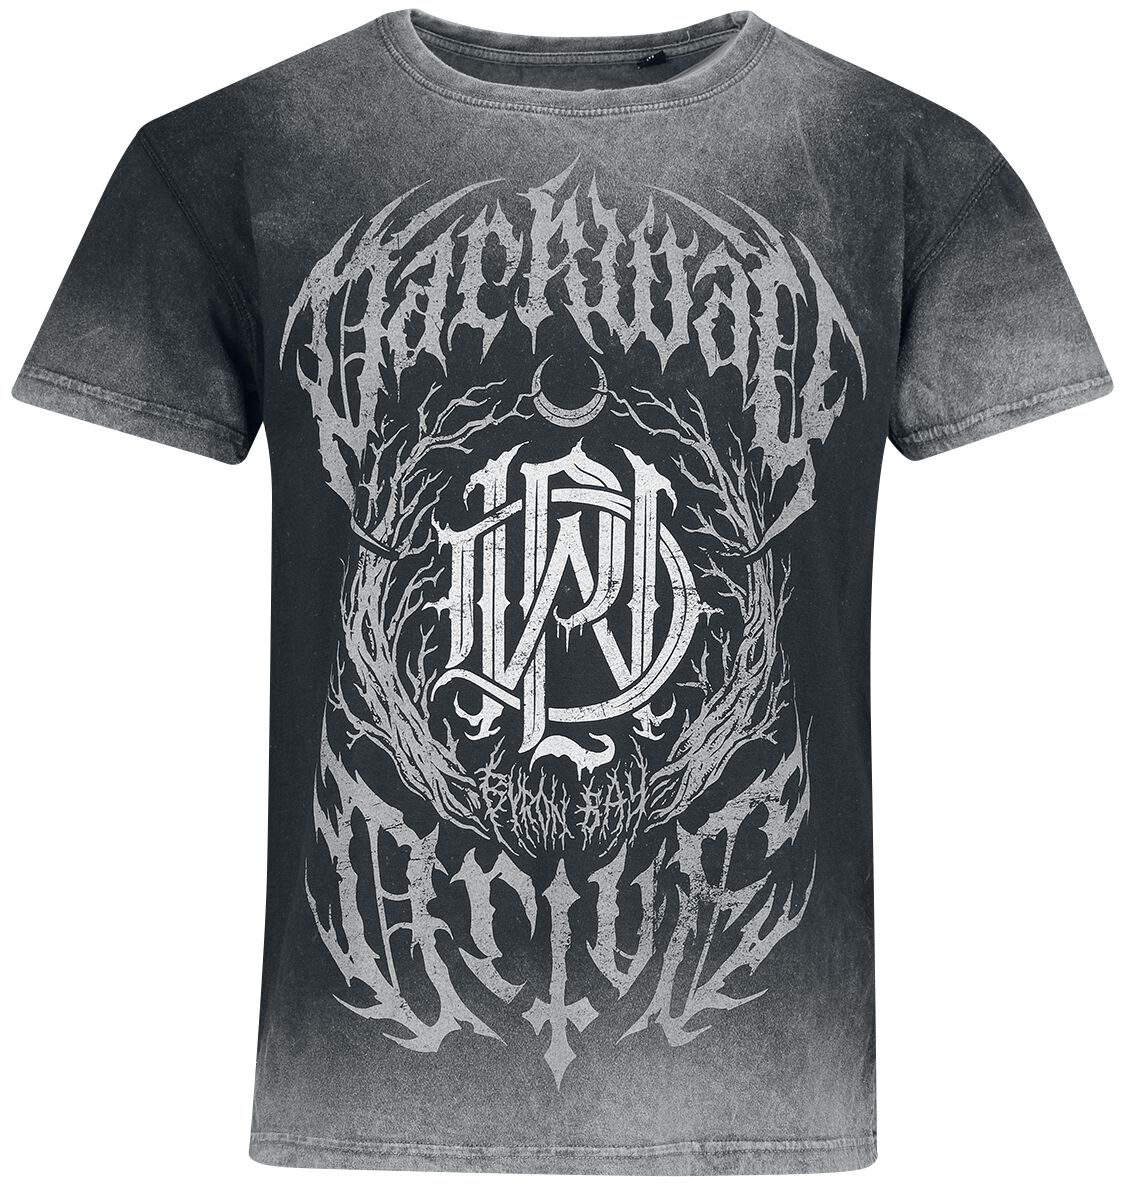 Image of T-Shirt di Parkway Drive - Metal Crest - S a XXL - Uomo - grigio scuro/grigio chiaro